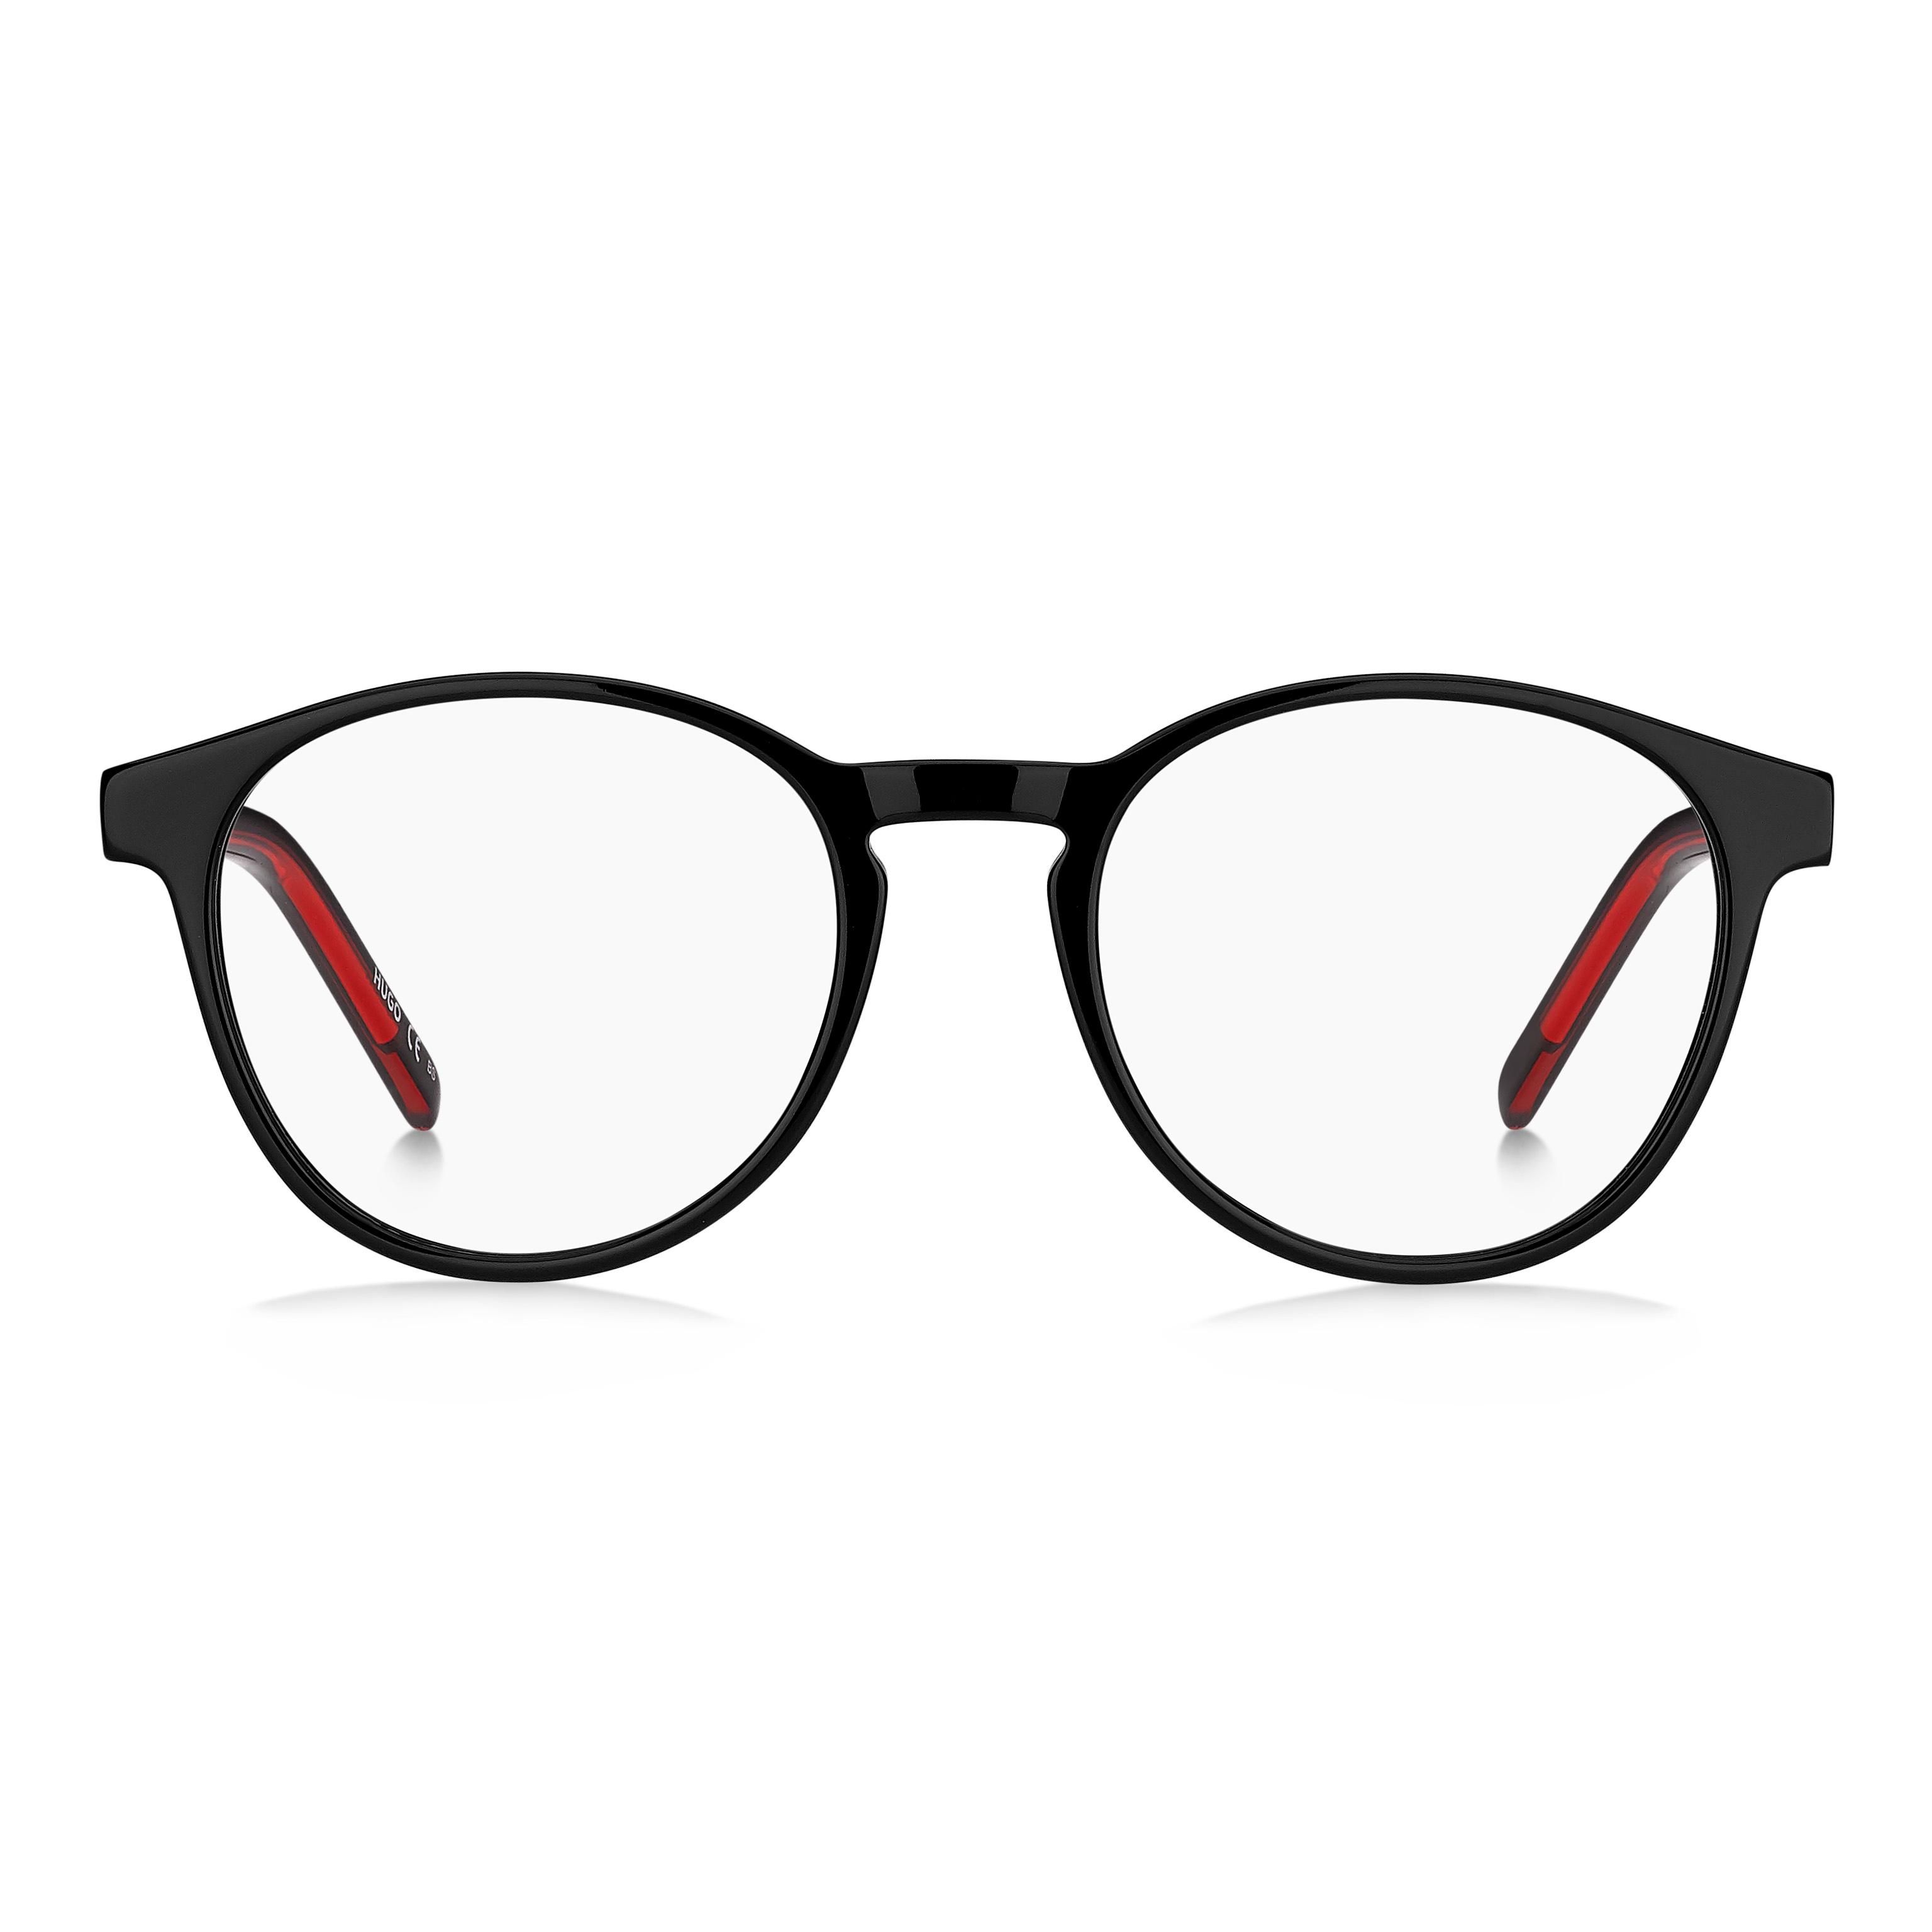 HG 1197 Round Eyeglasses 807 - size 50